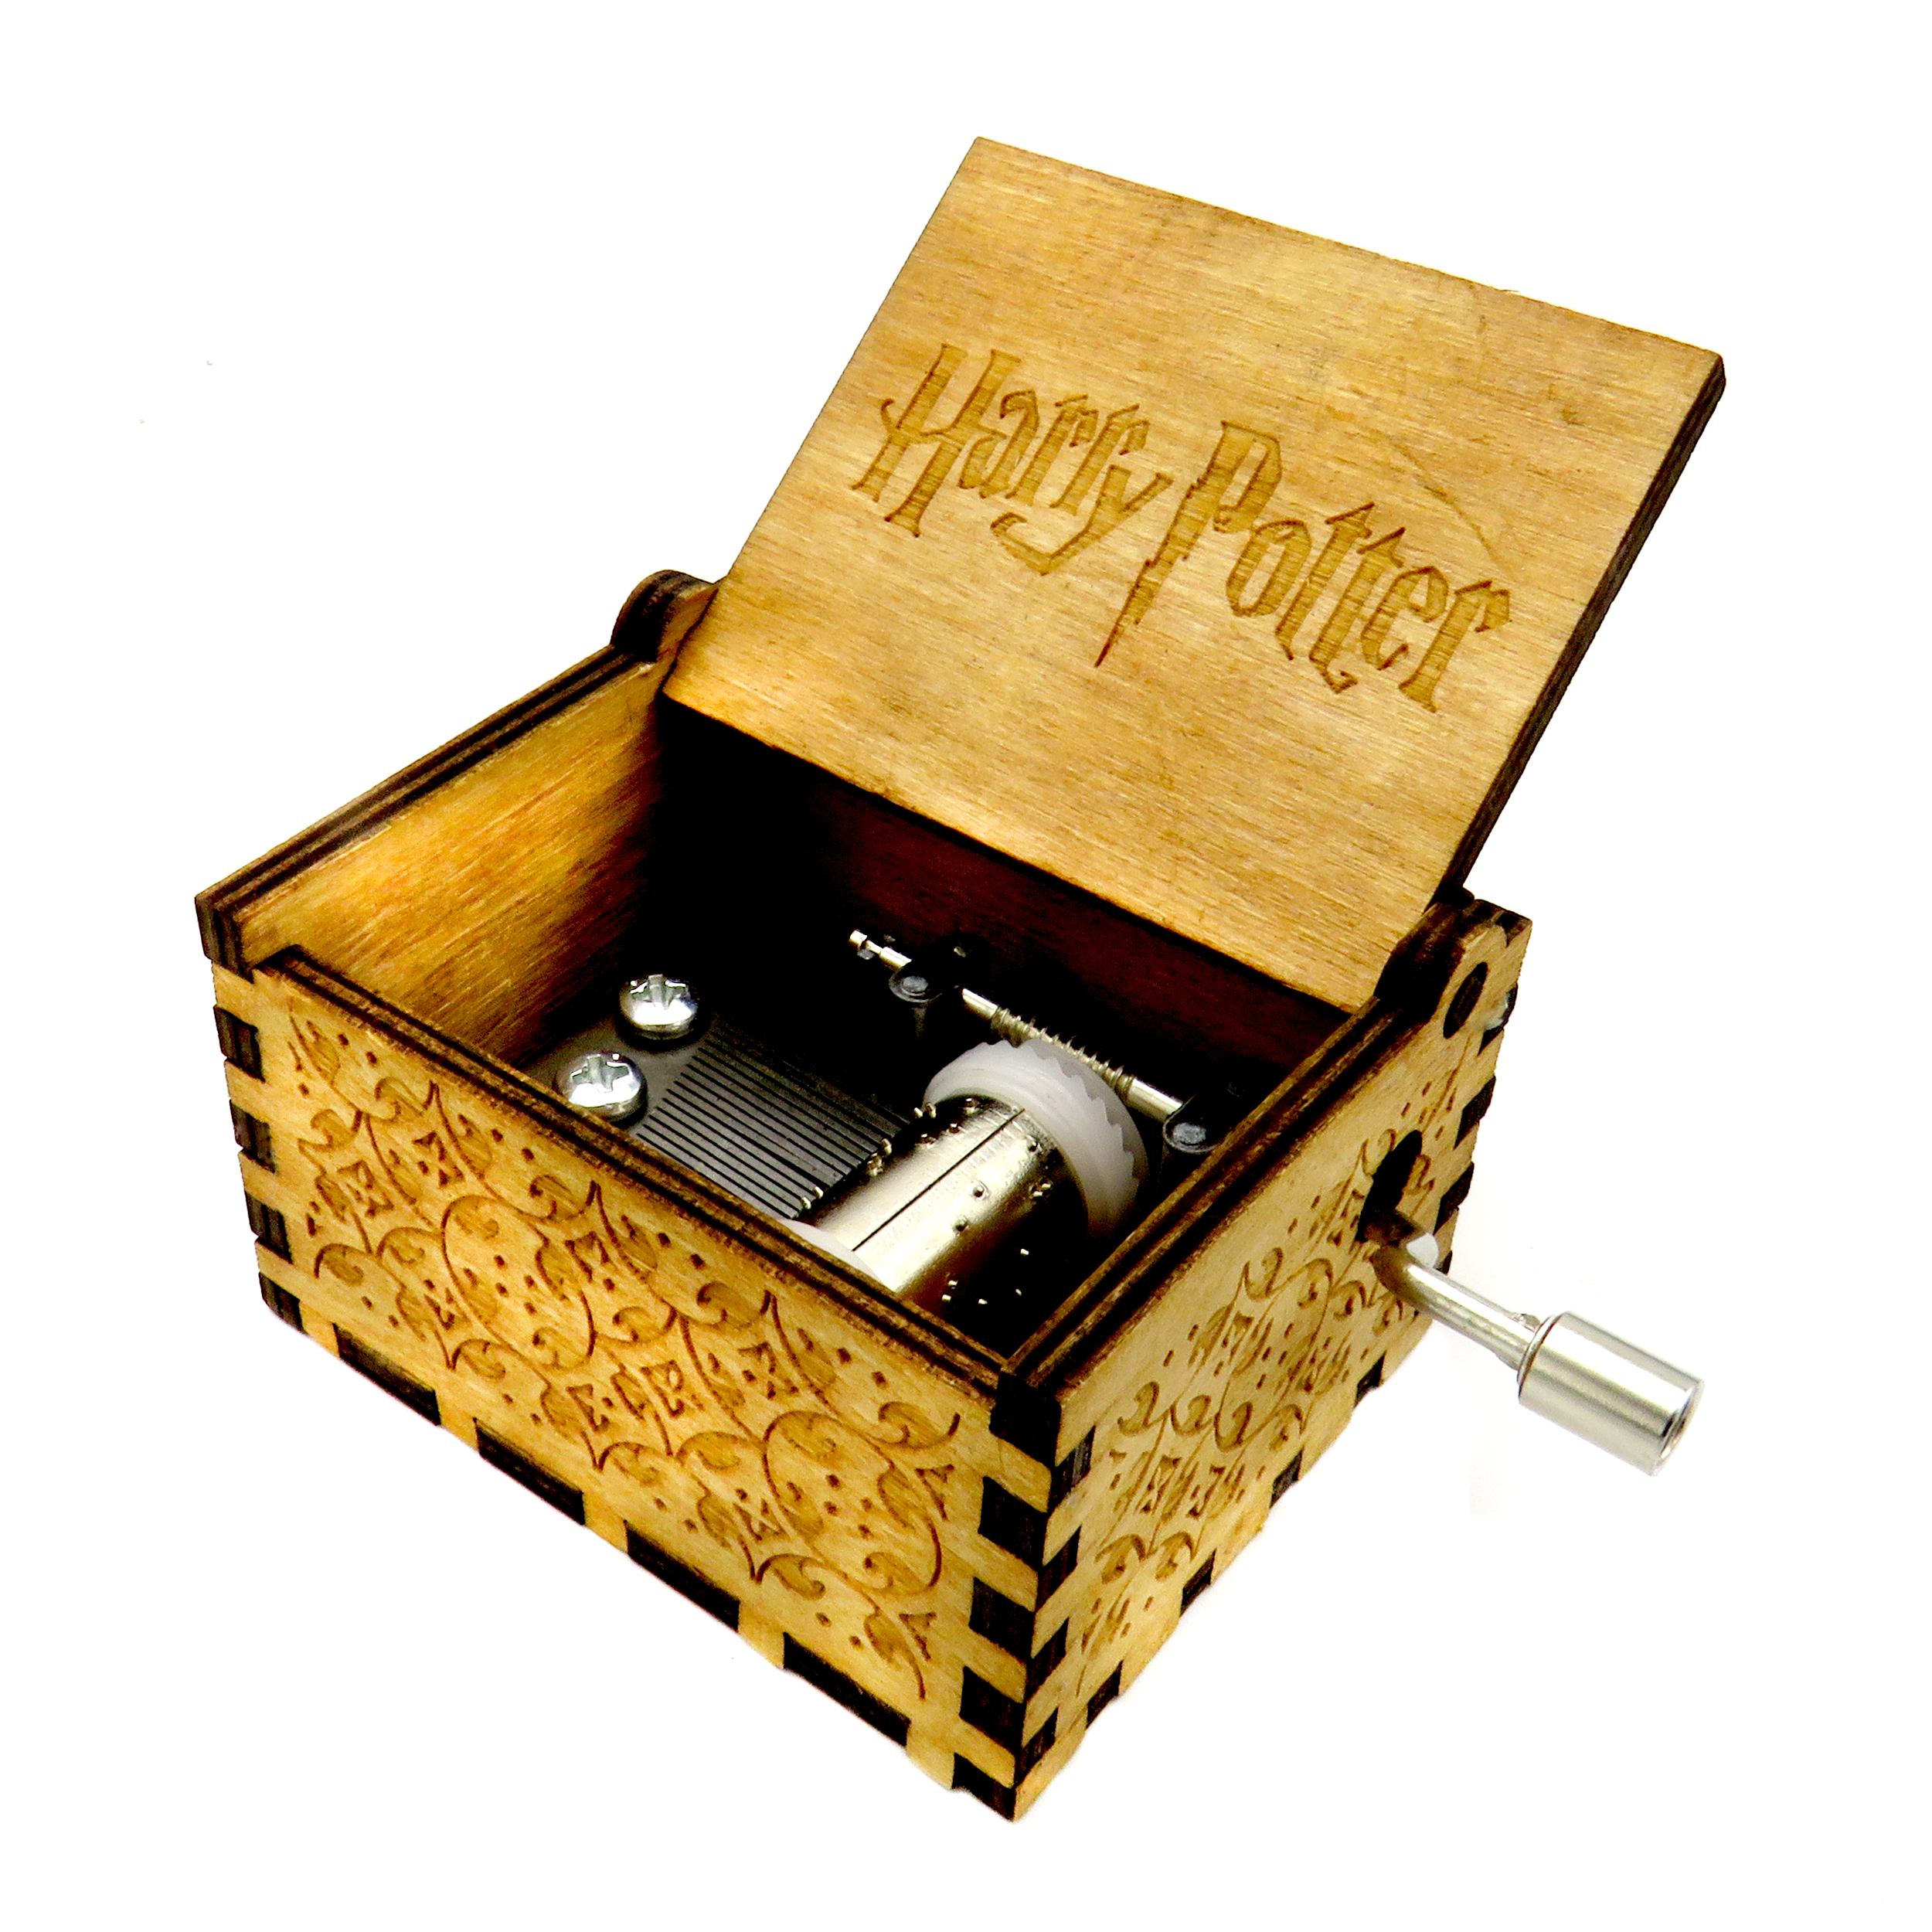  جعبه موزیکال مدل Harry Potter